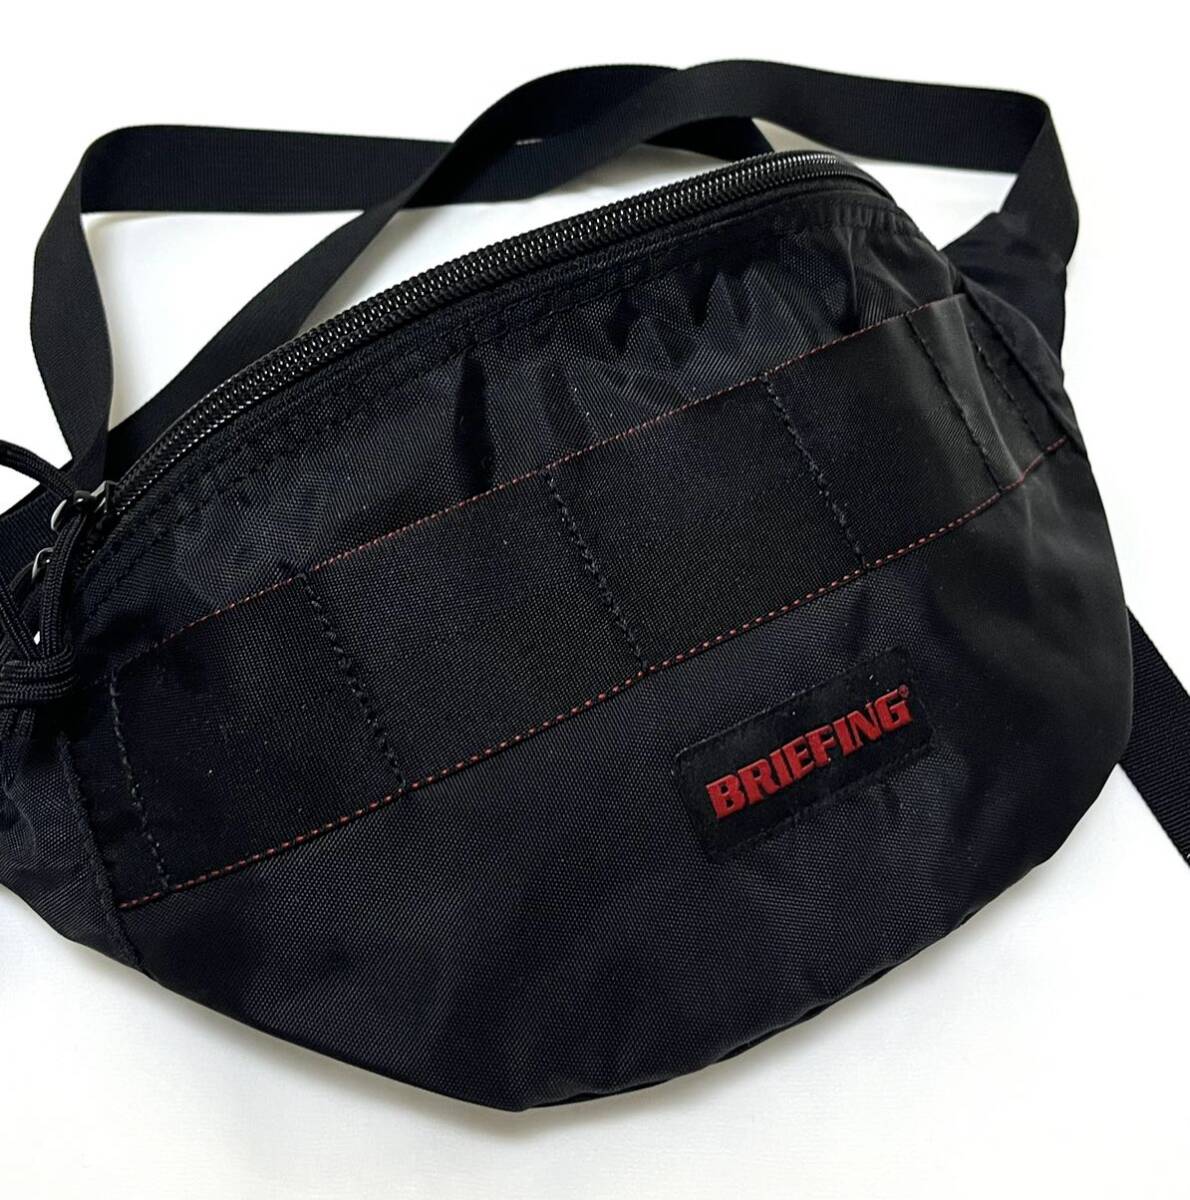  unused BRIEFING BODY BAG TX SLING BLACK Briefing nylon body bag waist bag shoulder bag shoulder diagonal ..